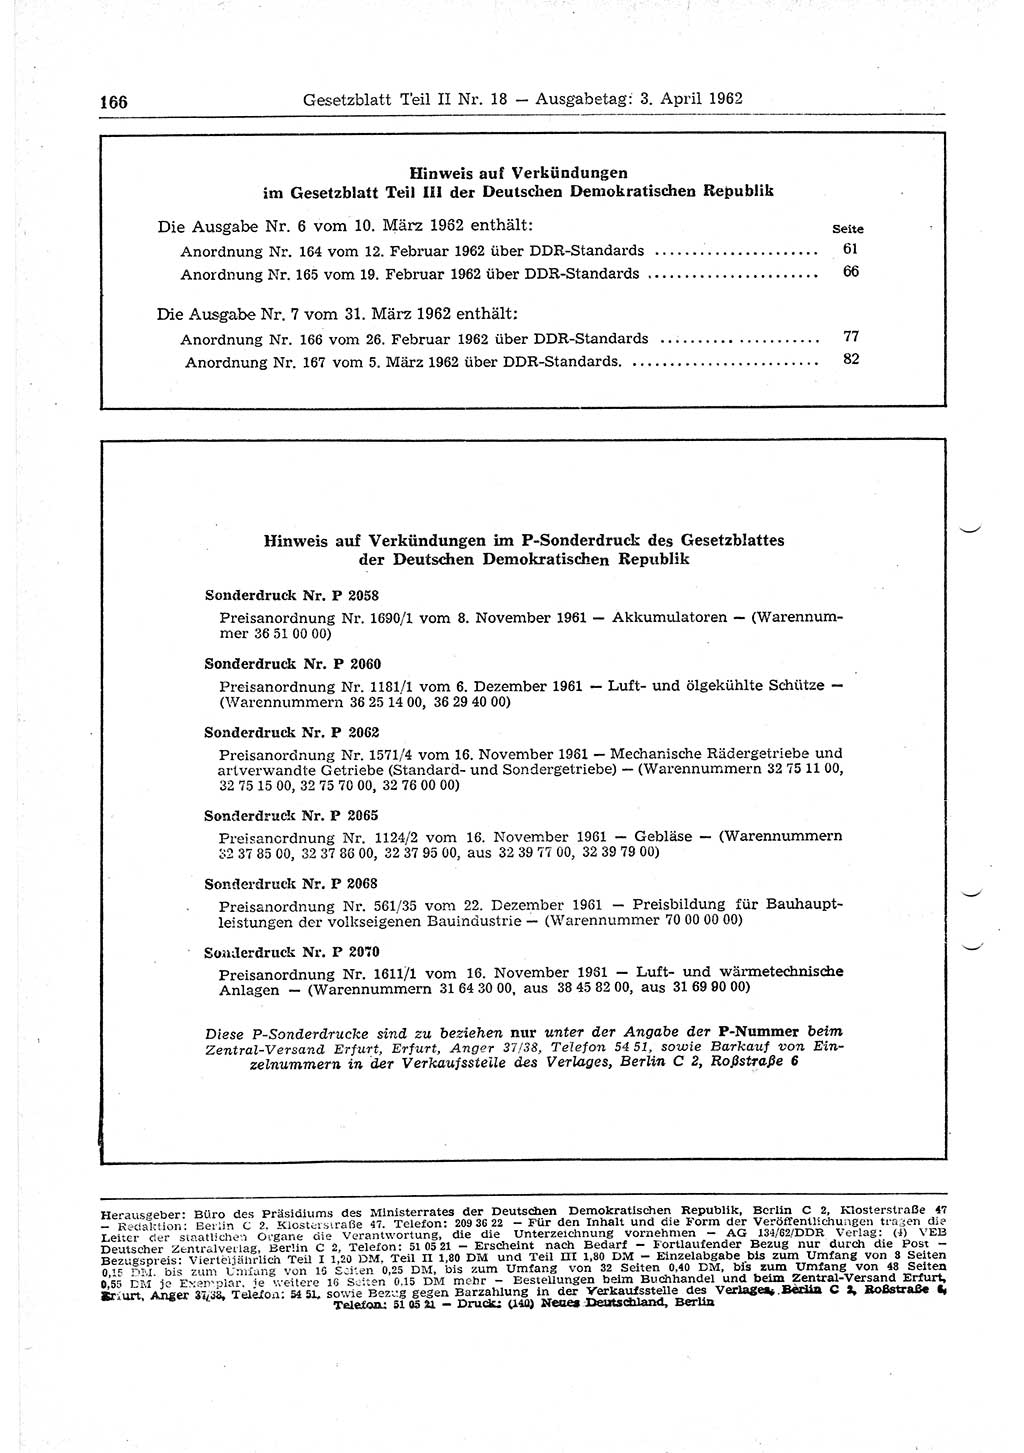 Gesetzblatt (GBl.) der Deutschen Demokratischen Republik (DDR) Teil ⅠⅠ 1962, Seite 166 (GBl. DDR ⅠⅠ 1962, S. 166)